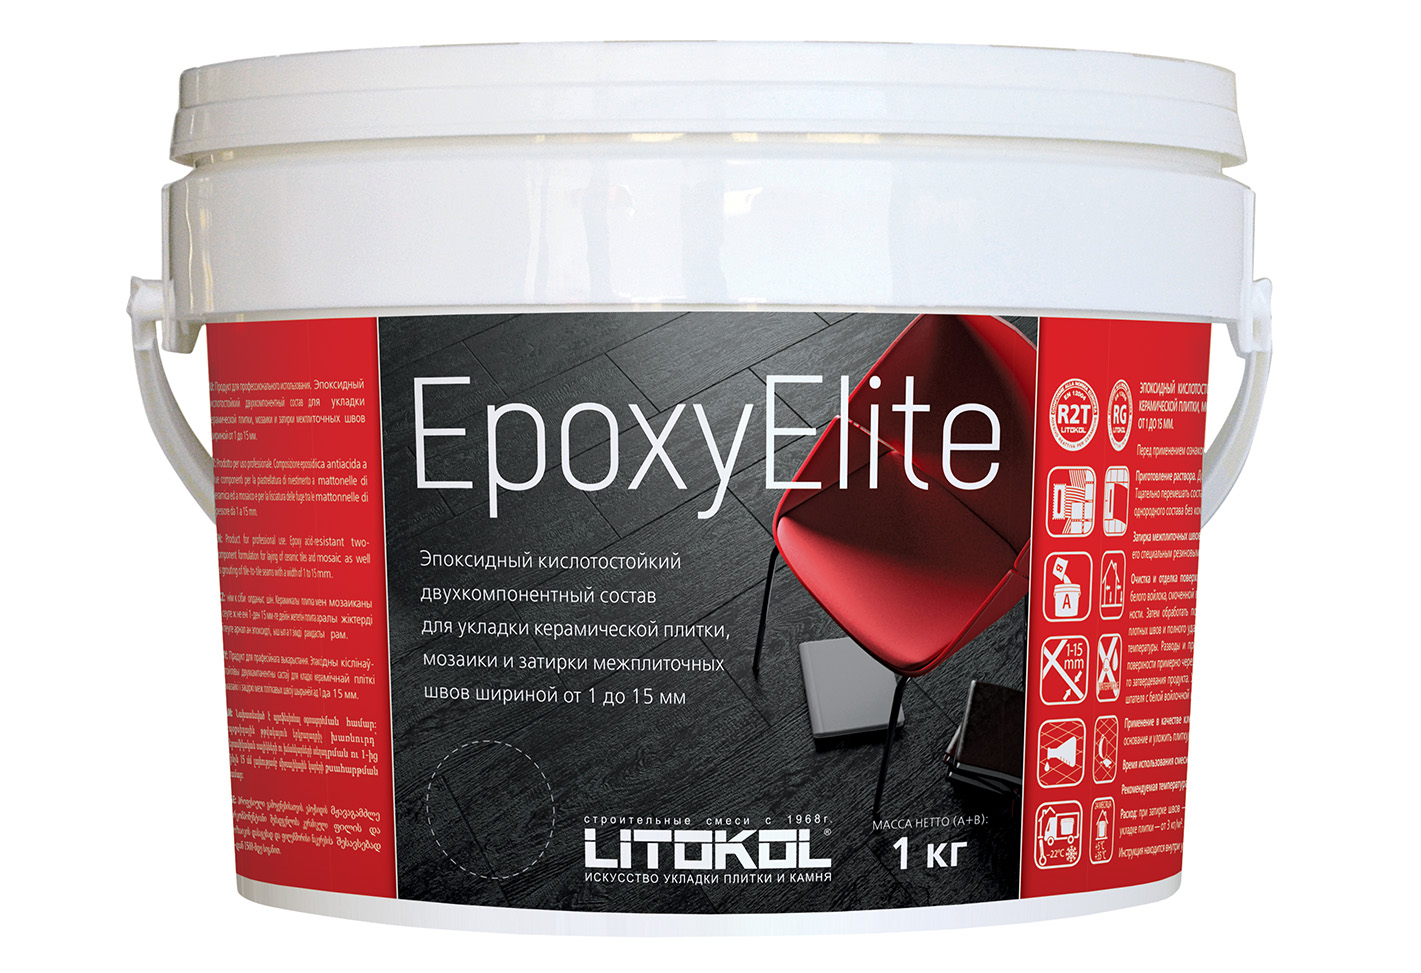  Epoxyelite EPOXYELITE E.06 Мокрый асфальт. 2 кг - фото 2